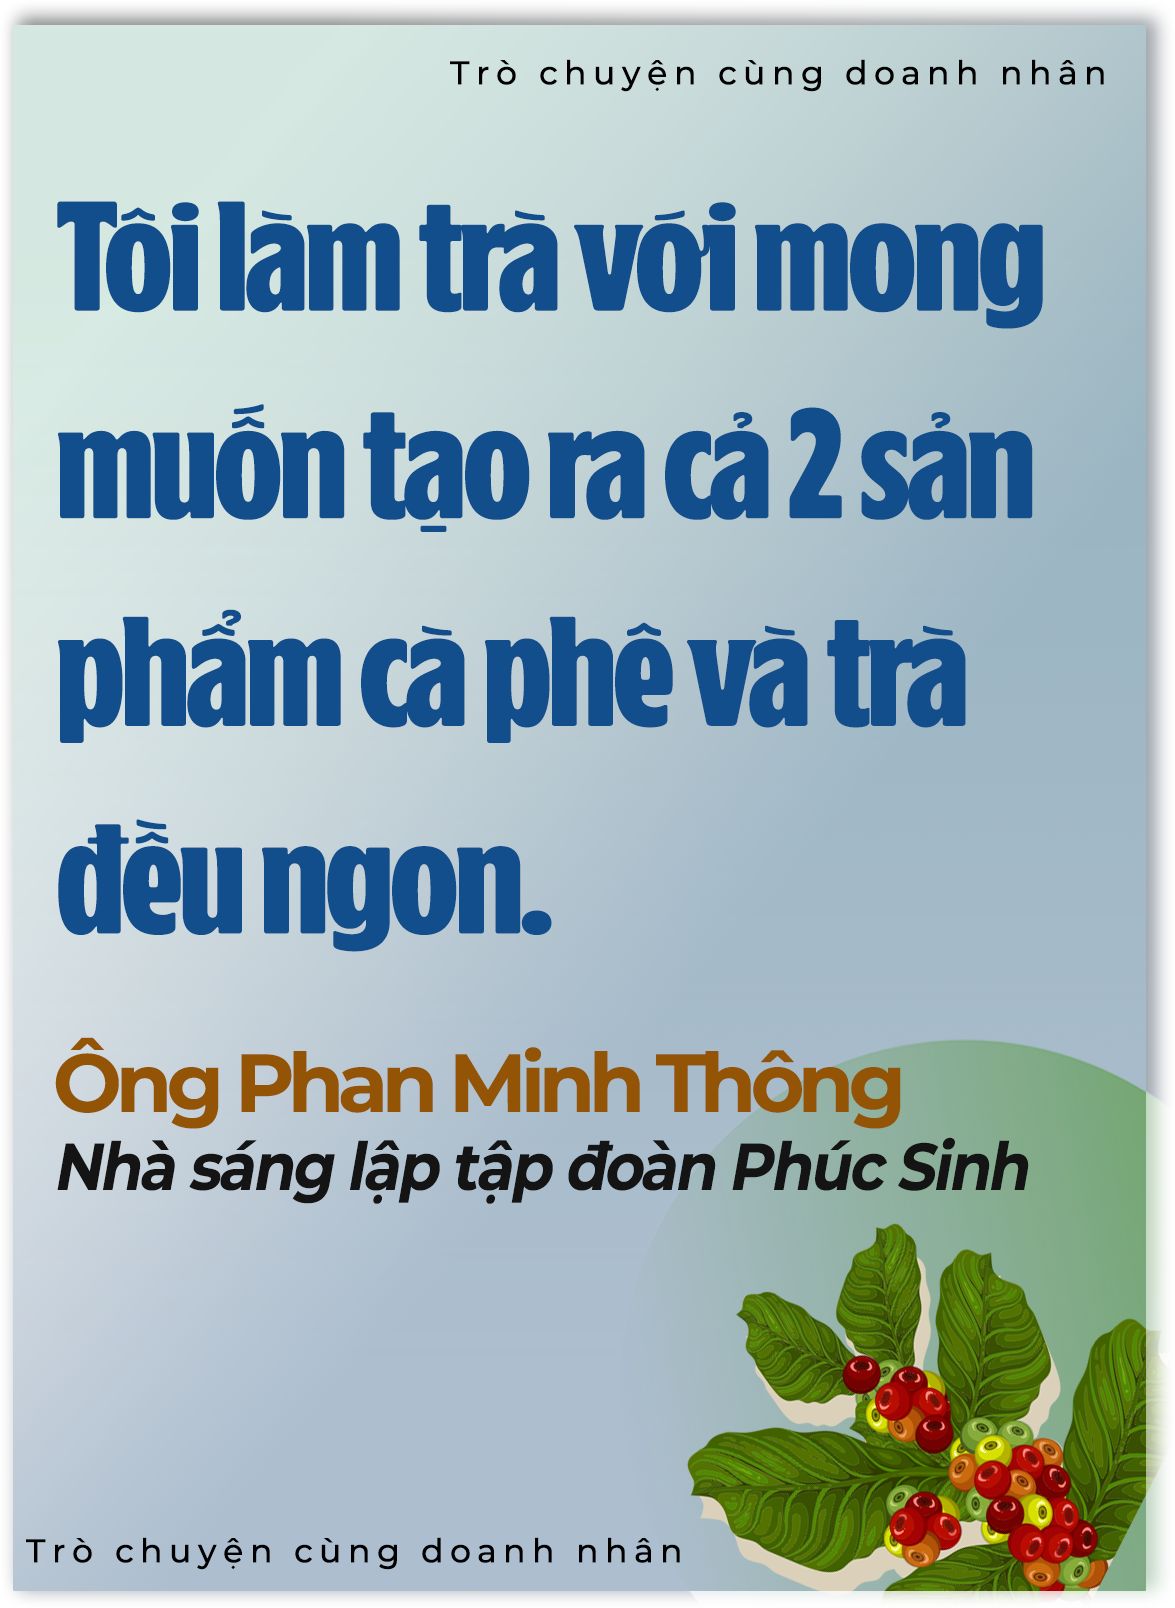 'Vua tiêu' Phan Minh Thông: Tôi nhìn thấy vàng ròng từ nông nghiệp- Ảnh 4.